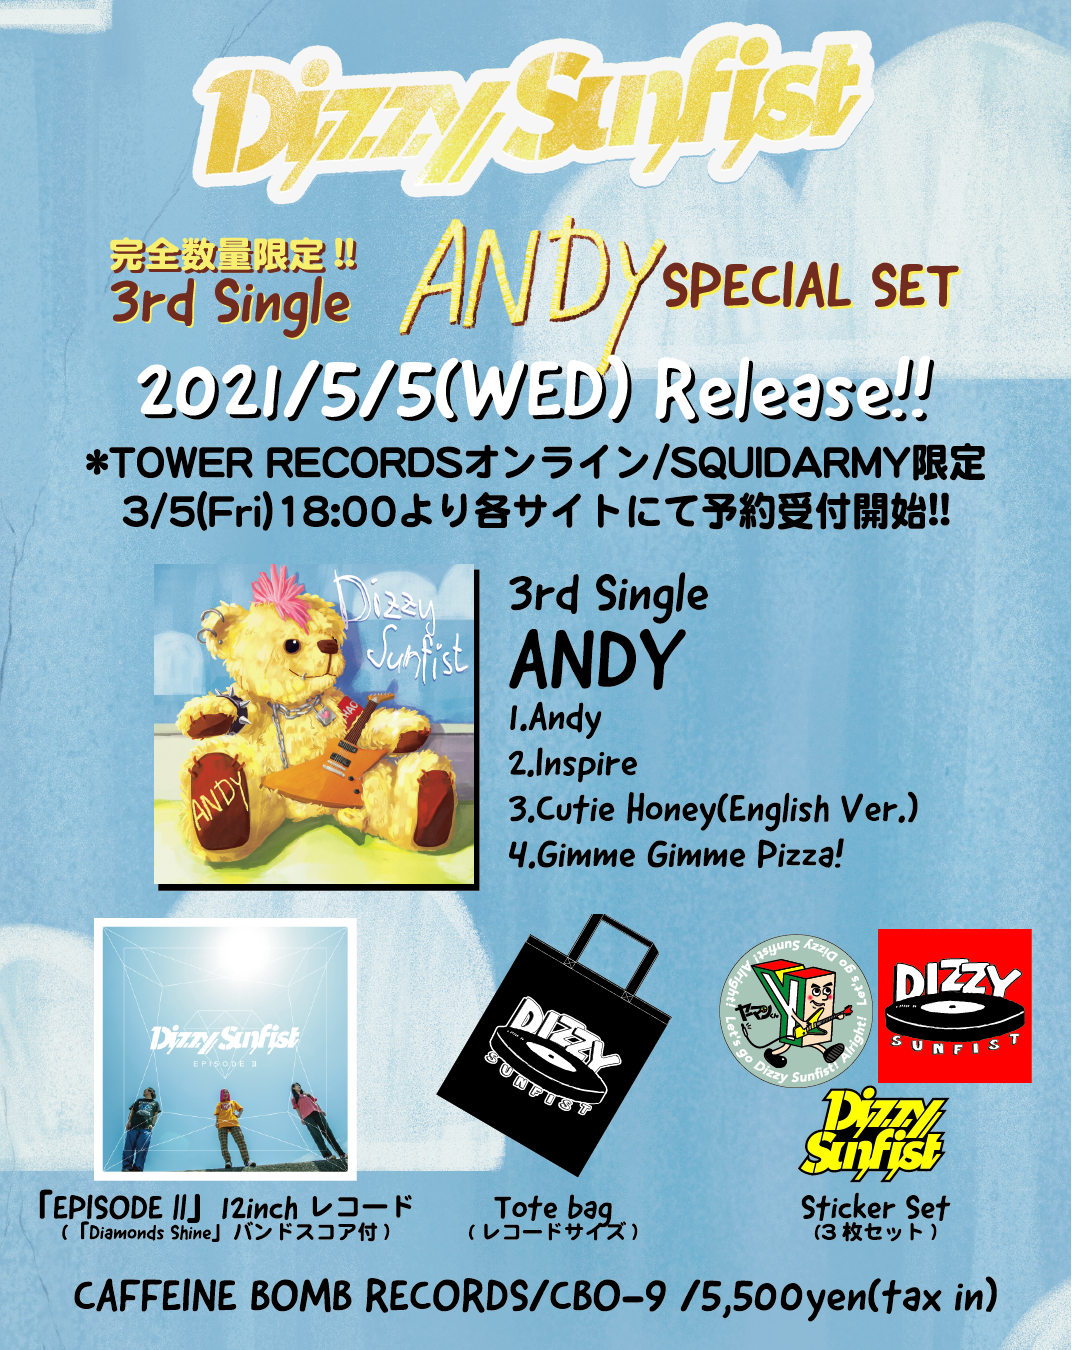 完全数量限定版 3rd Single「ANDY」SPECIAL SET リリース決定